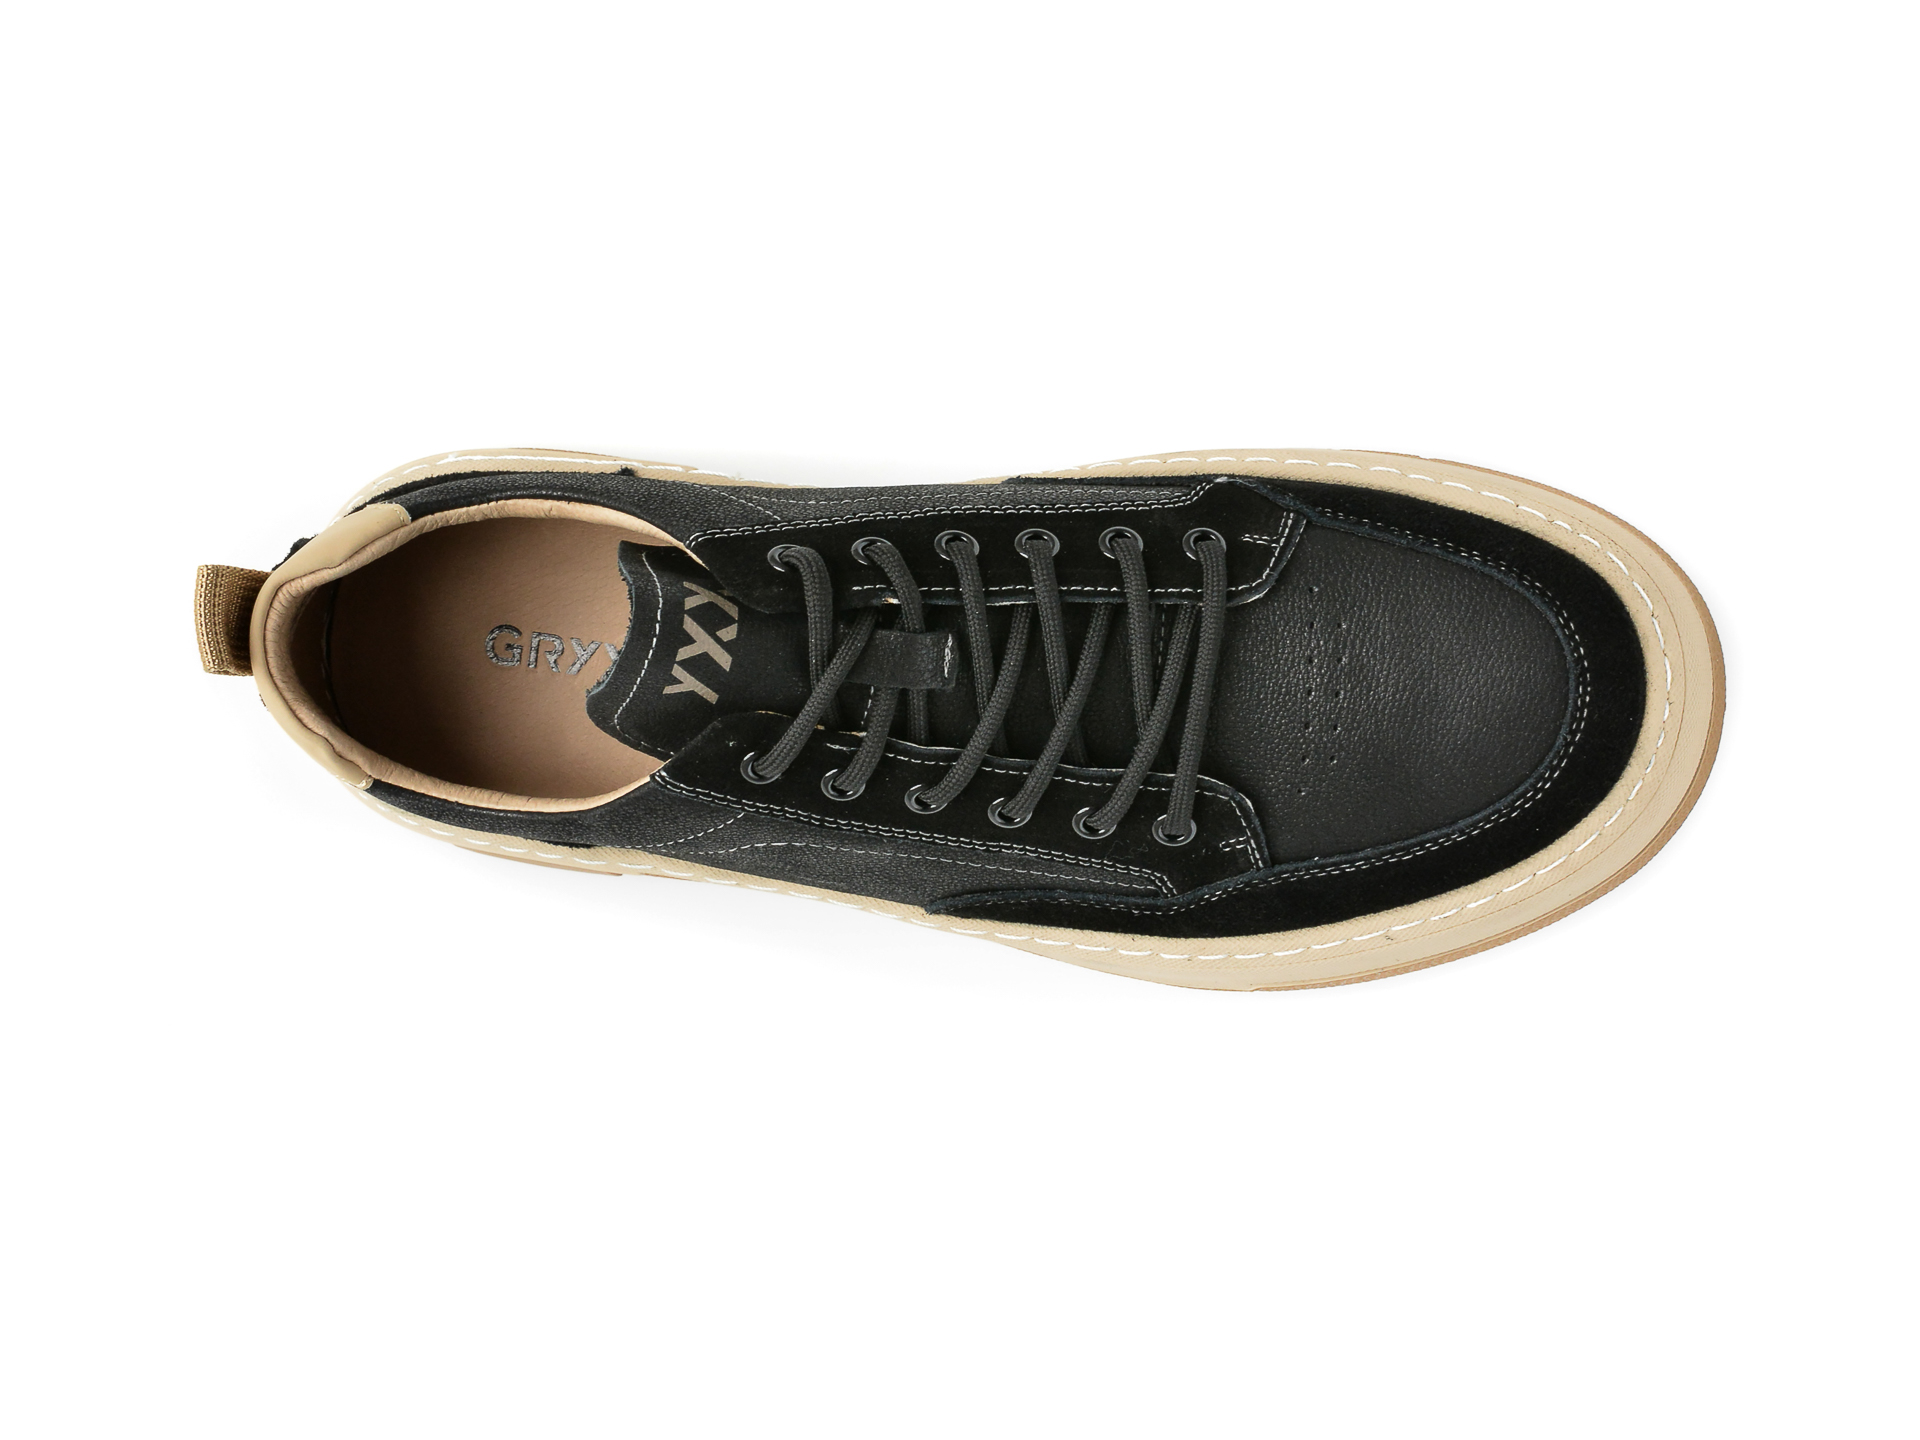 Poze Pantofi GRYXX negri, 52083, din piele naturala otter.ro